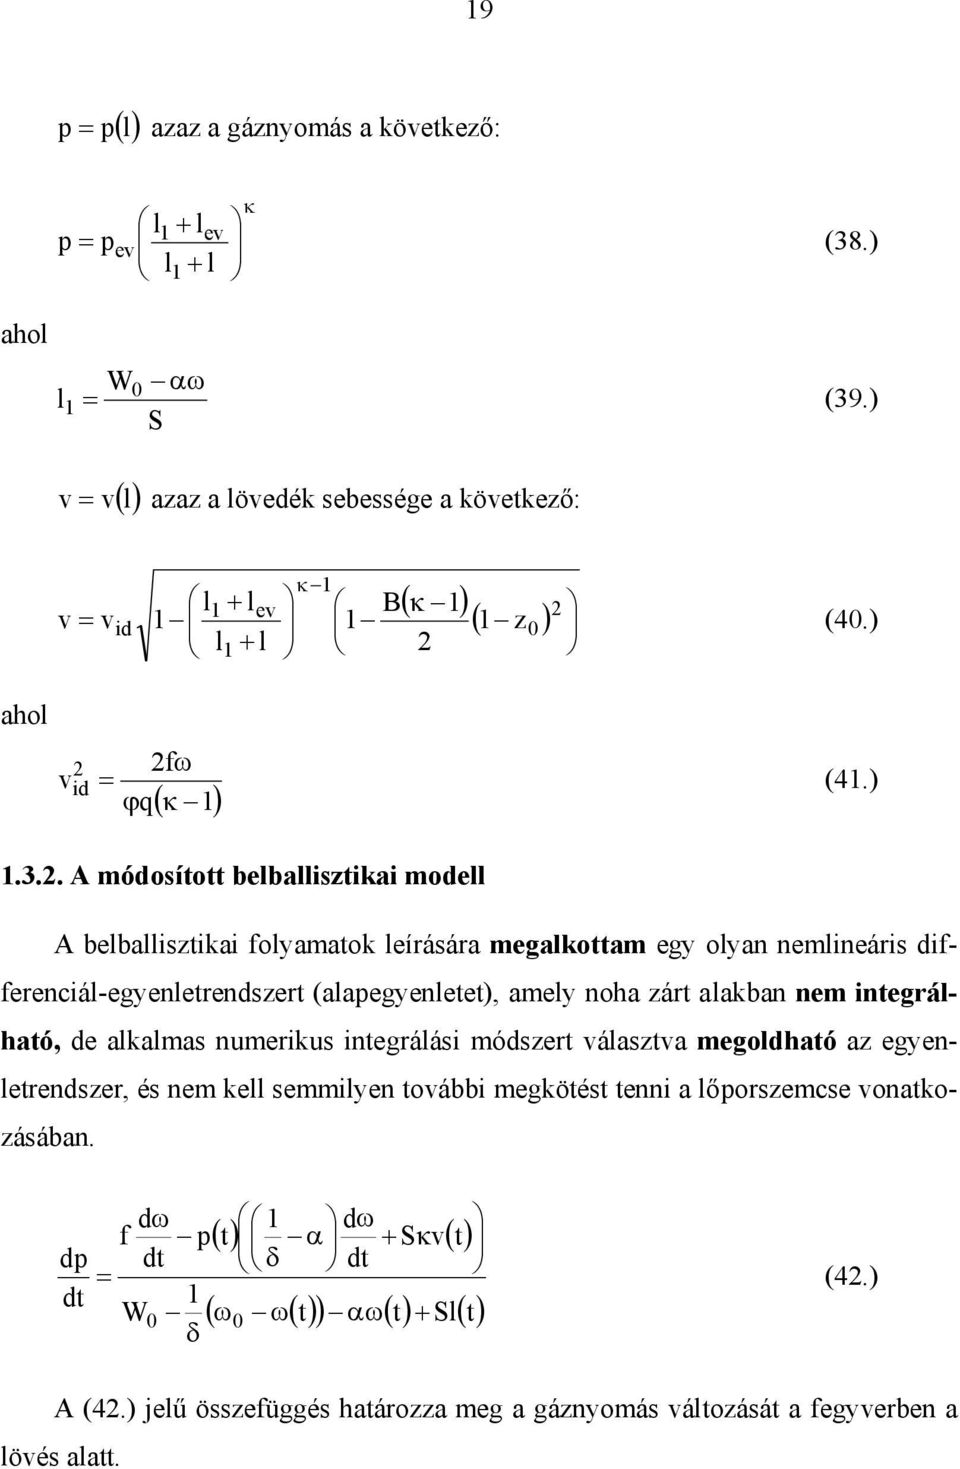 . A módosított belballisztiai modell A belballisztiai folyamato leírására megalottam egy olyan nemlineáris differenciál-egyenletrendszert (alapegyenletet), amely noha zárt alaban nem